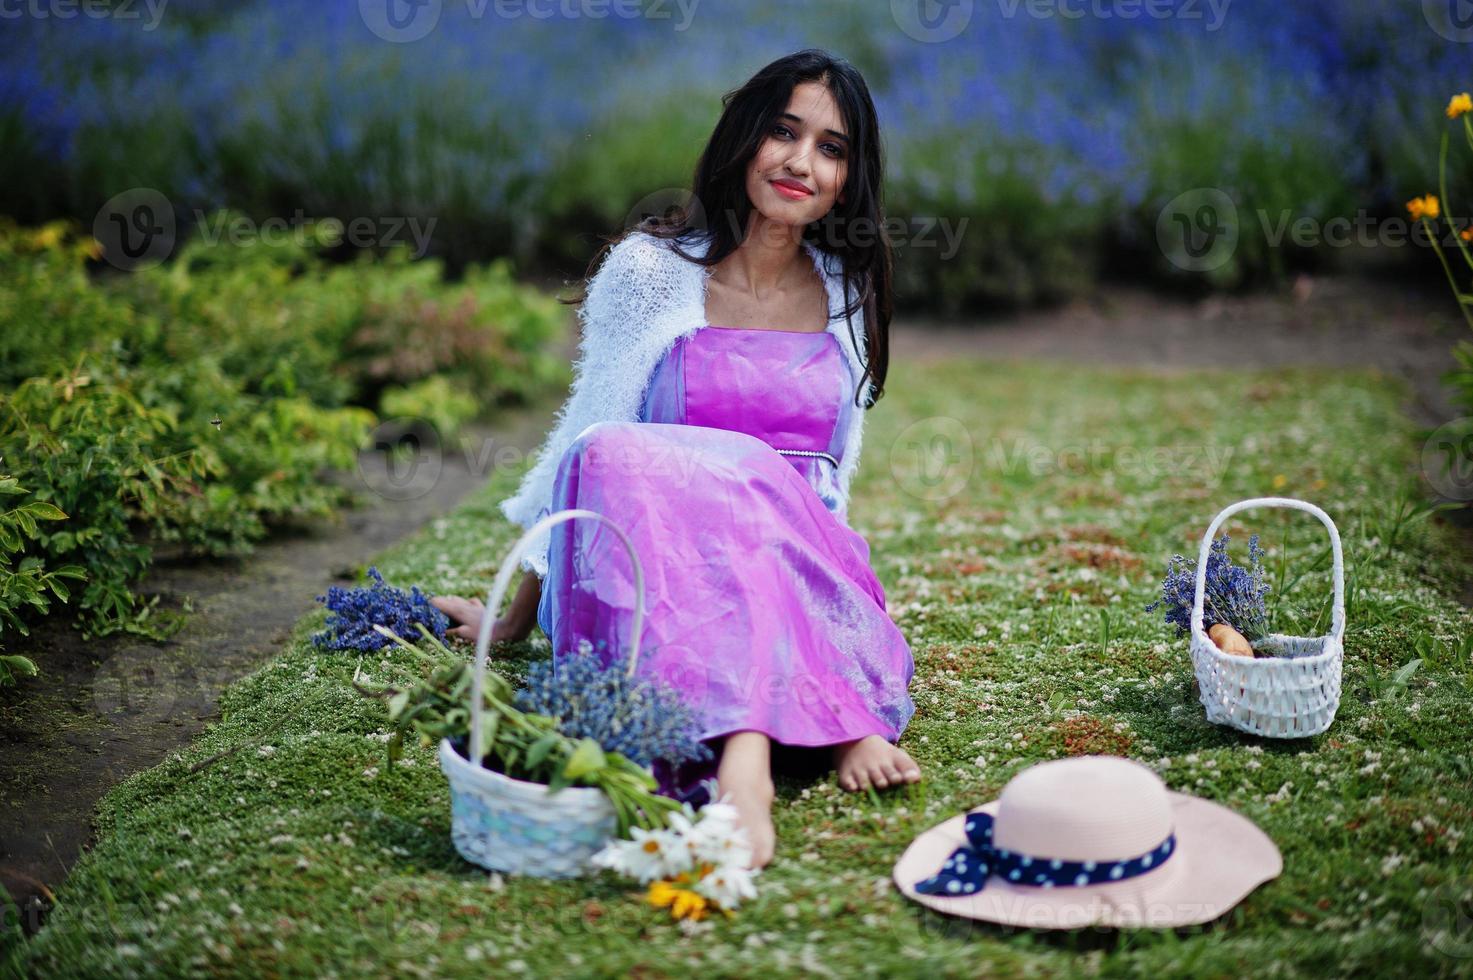 vacker indisk flicka bär saree Indien traditionell klänning i lila lavendelfält. foto